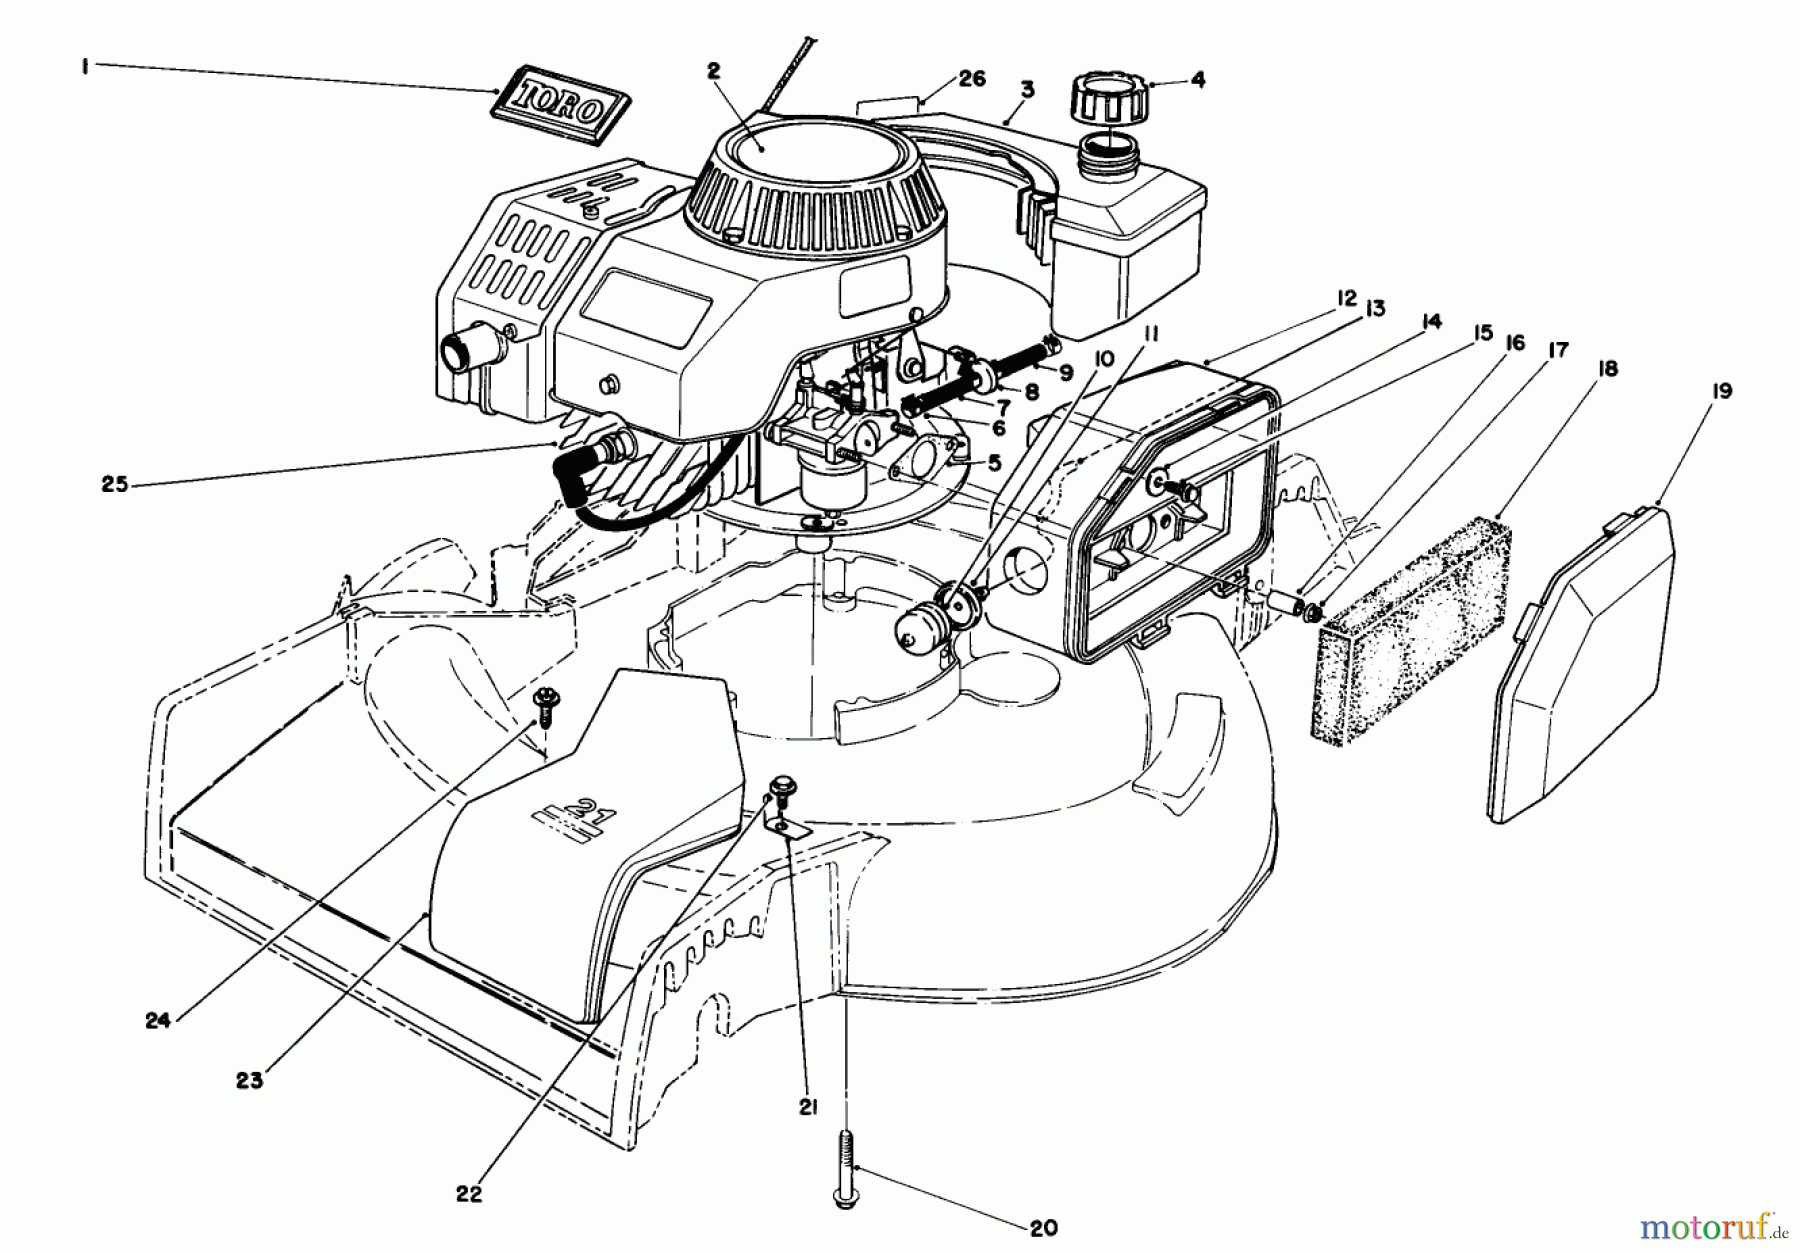  Toro Neu Mowers, Walk-Behind Seite 1 16212WG - Toro Lawnmower, 1990 (0000001-0999999) ENGINE ASSEMBLY